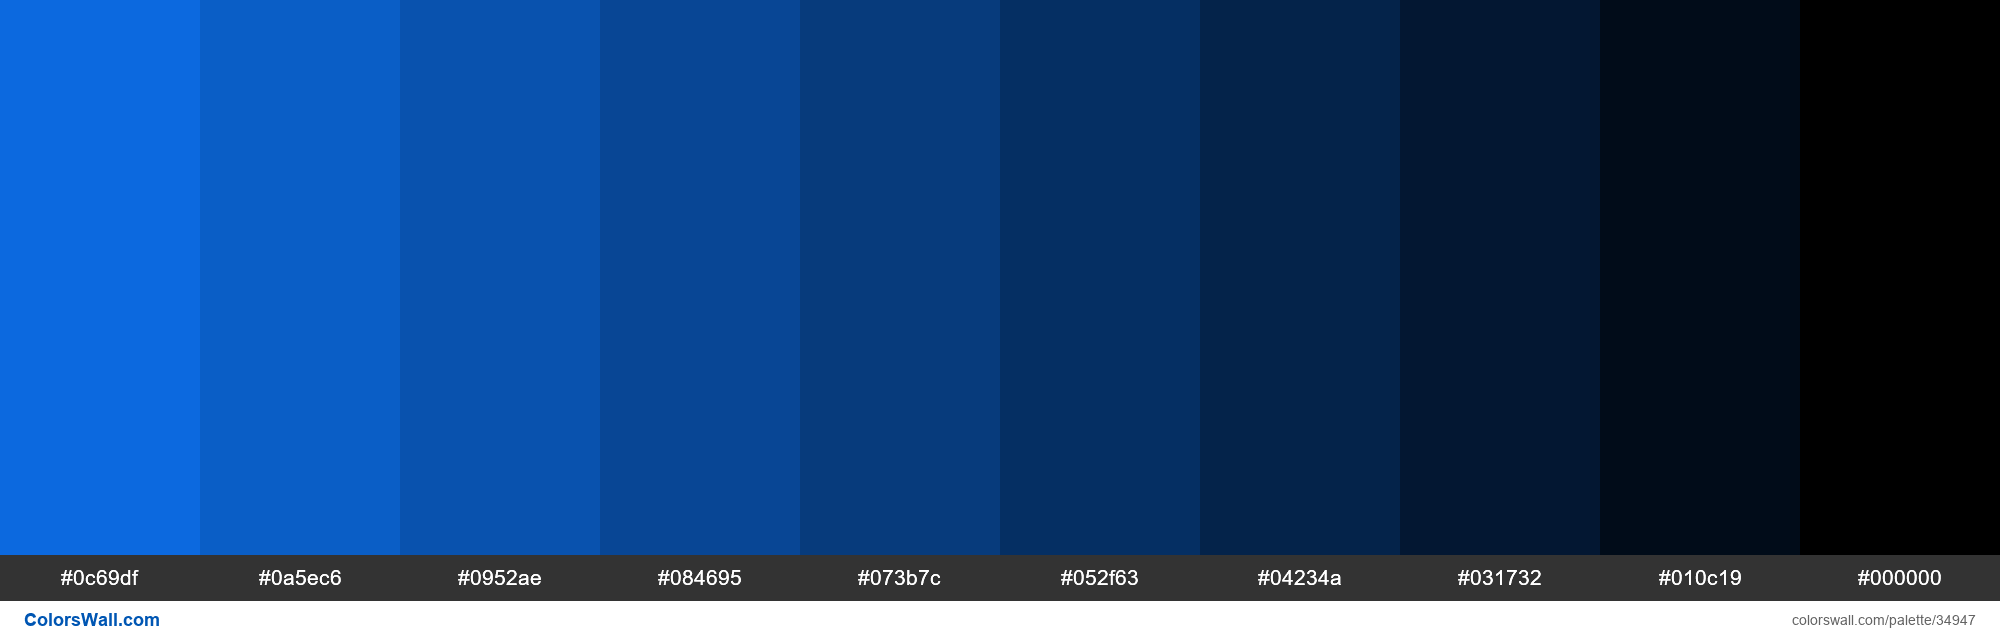 Shades XKCD Color deep sky blue #0d75f8 hex colors palette - ColorsWall